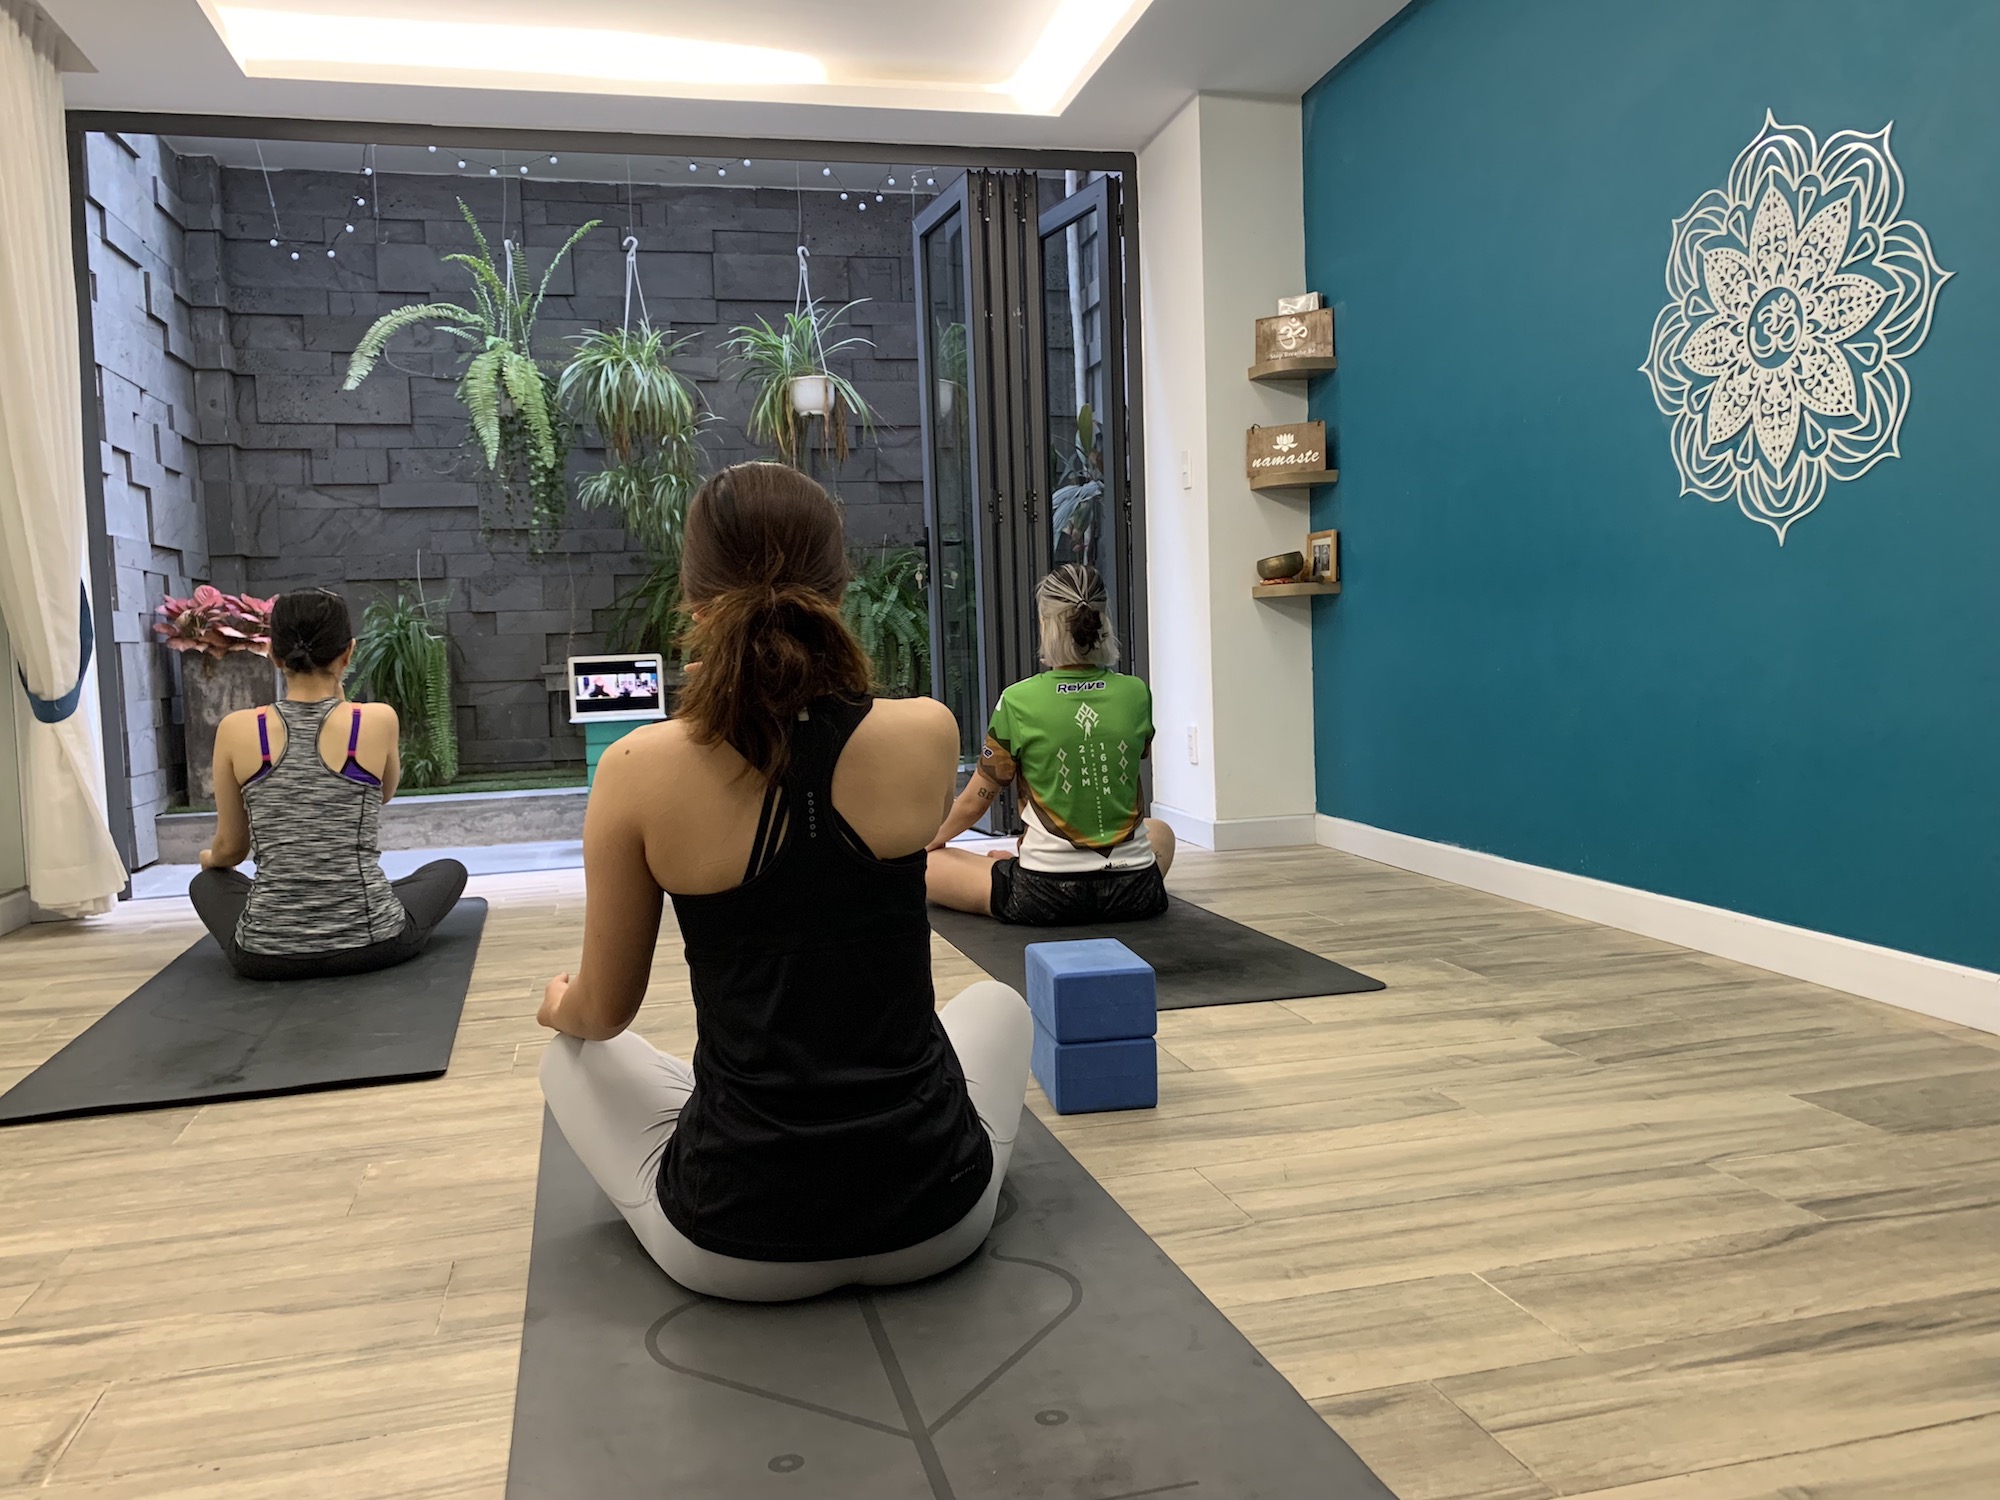 Chú trọng Sự tỉnh thức – Mindfulness khi thực hành Yoga